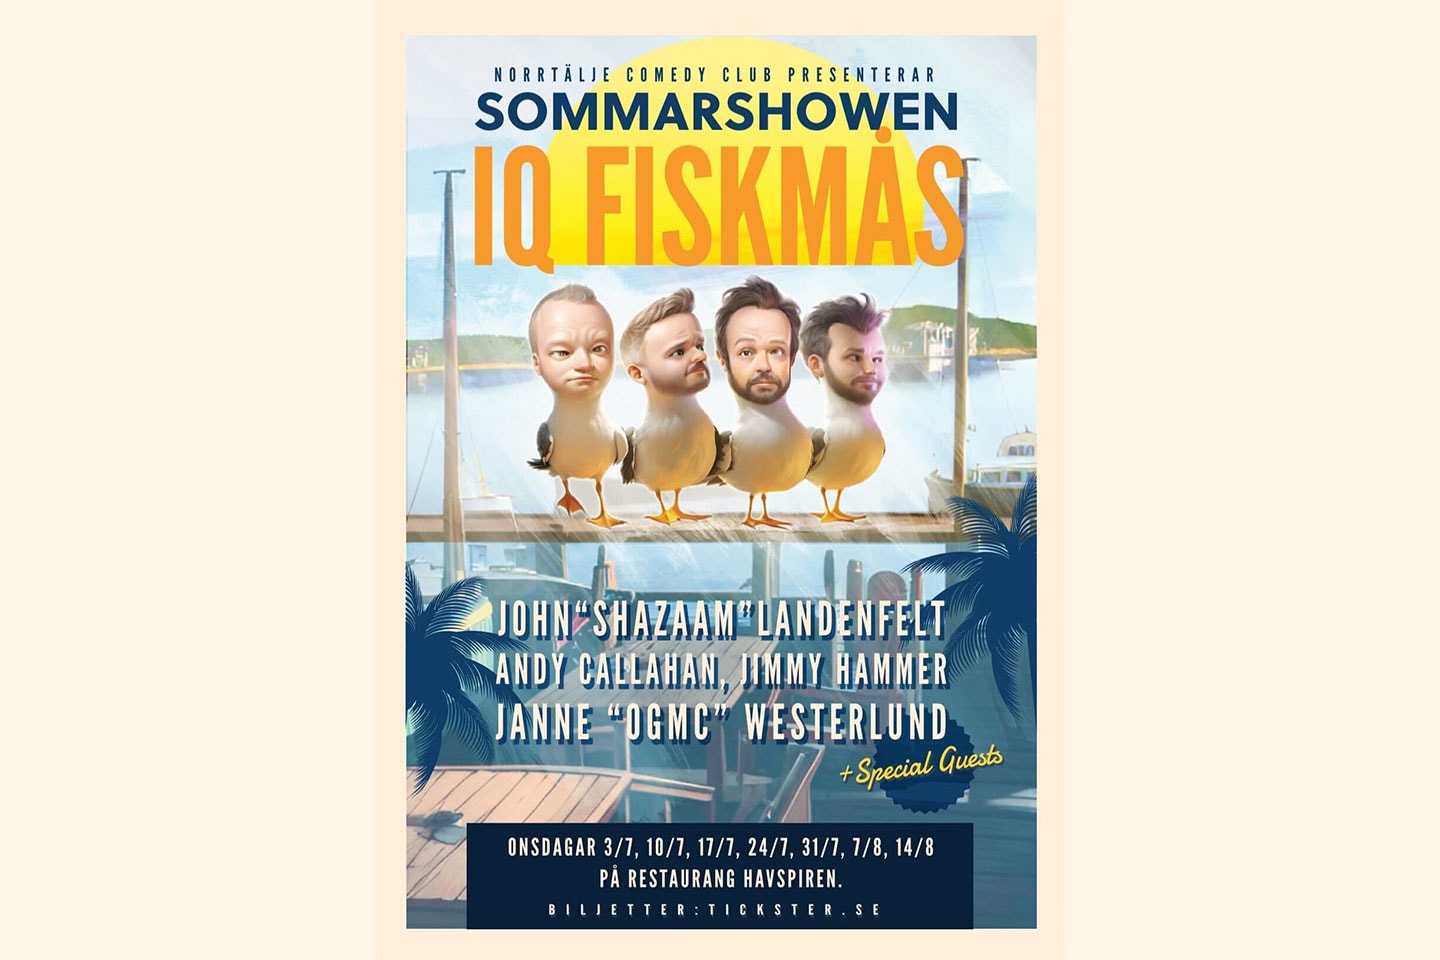 Stand up IQ Fiskmåsen och sommarfest med Norrtälje Comedy Club (1 av 2)